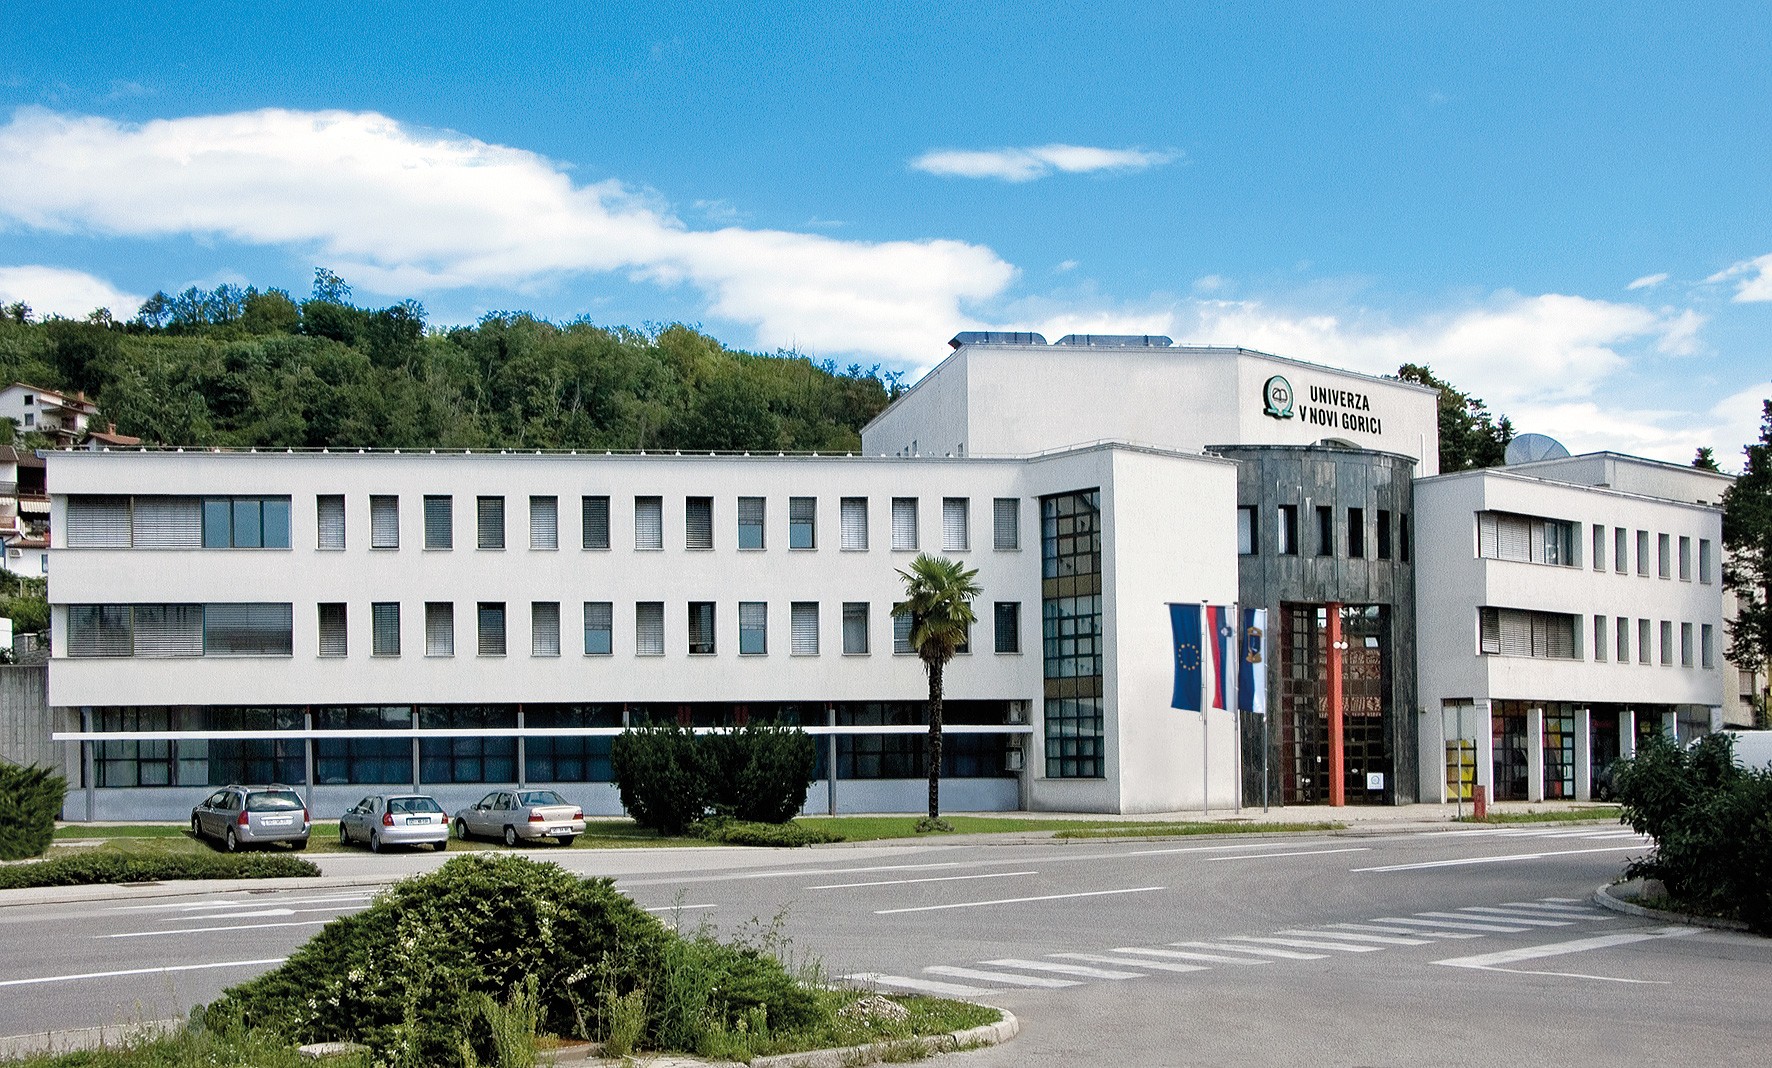 Univerza v Novi Gorici - Rožna Dolina, Nova Gorica